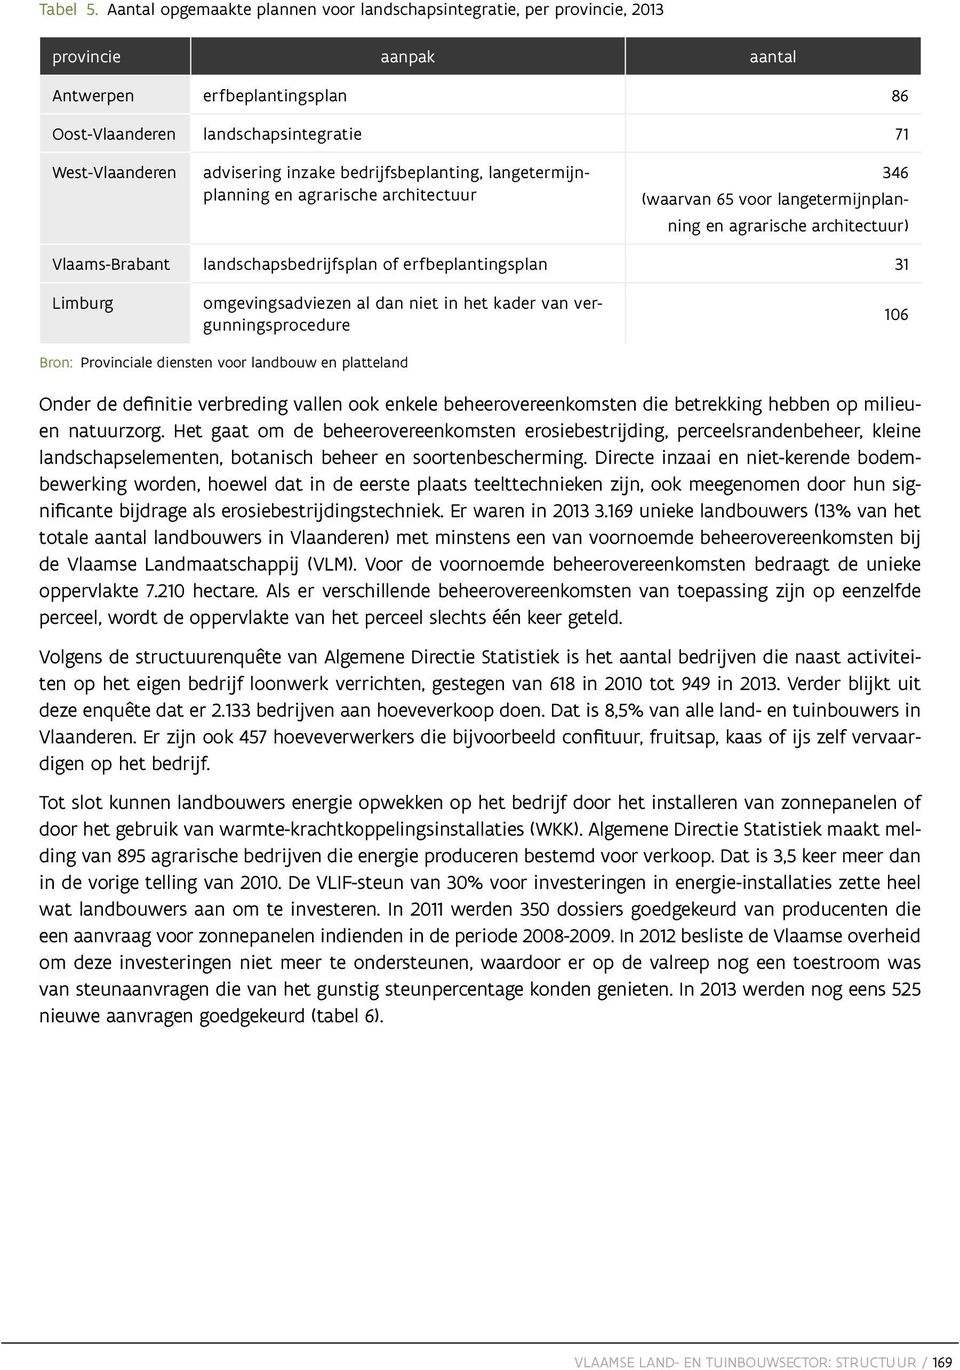 inzake bedrijfsbeplanting, langetermijnplanning en agrarische architectuur 346 (waarvan 65 voor langetermijnplanning en agrarische architectuur) Vlaams-Brabant landschapsbedrijfsplan of